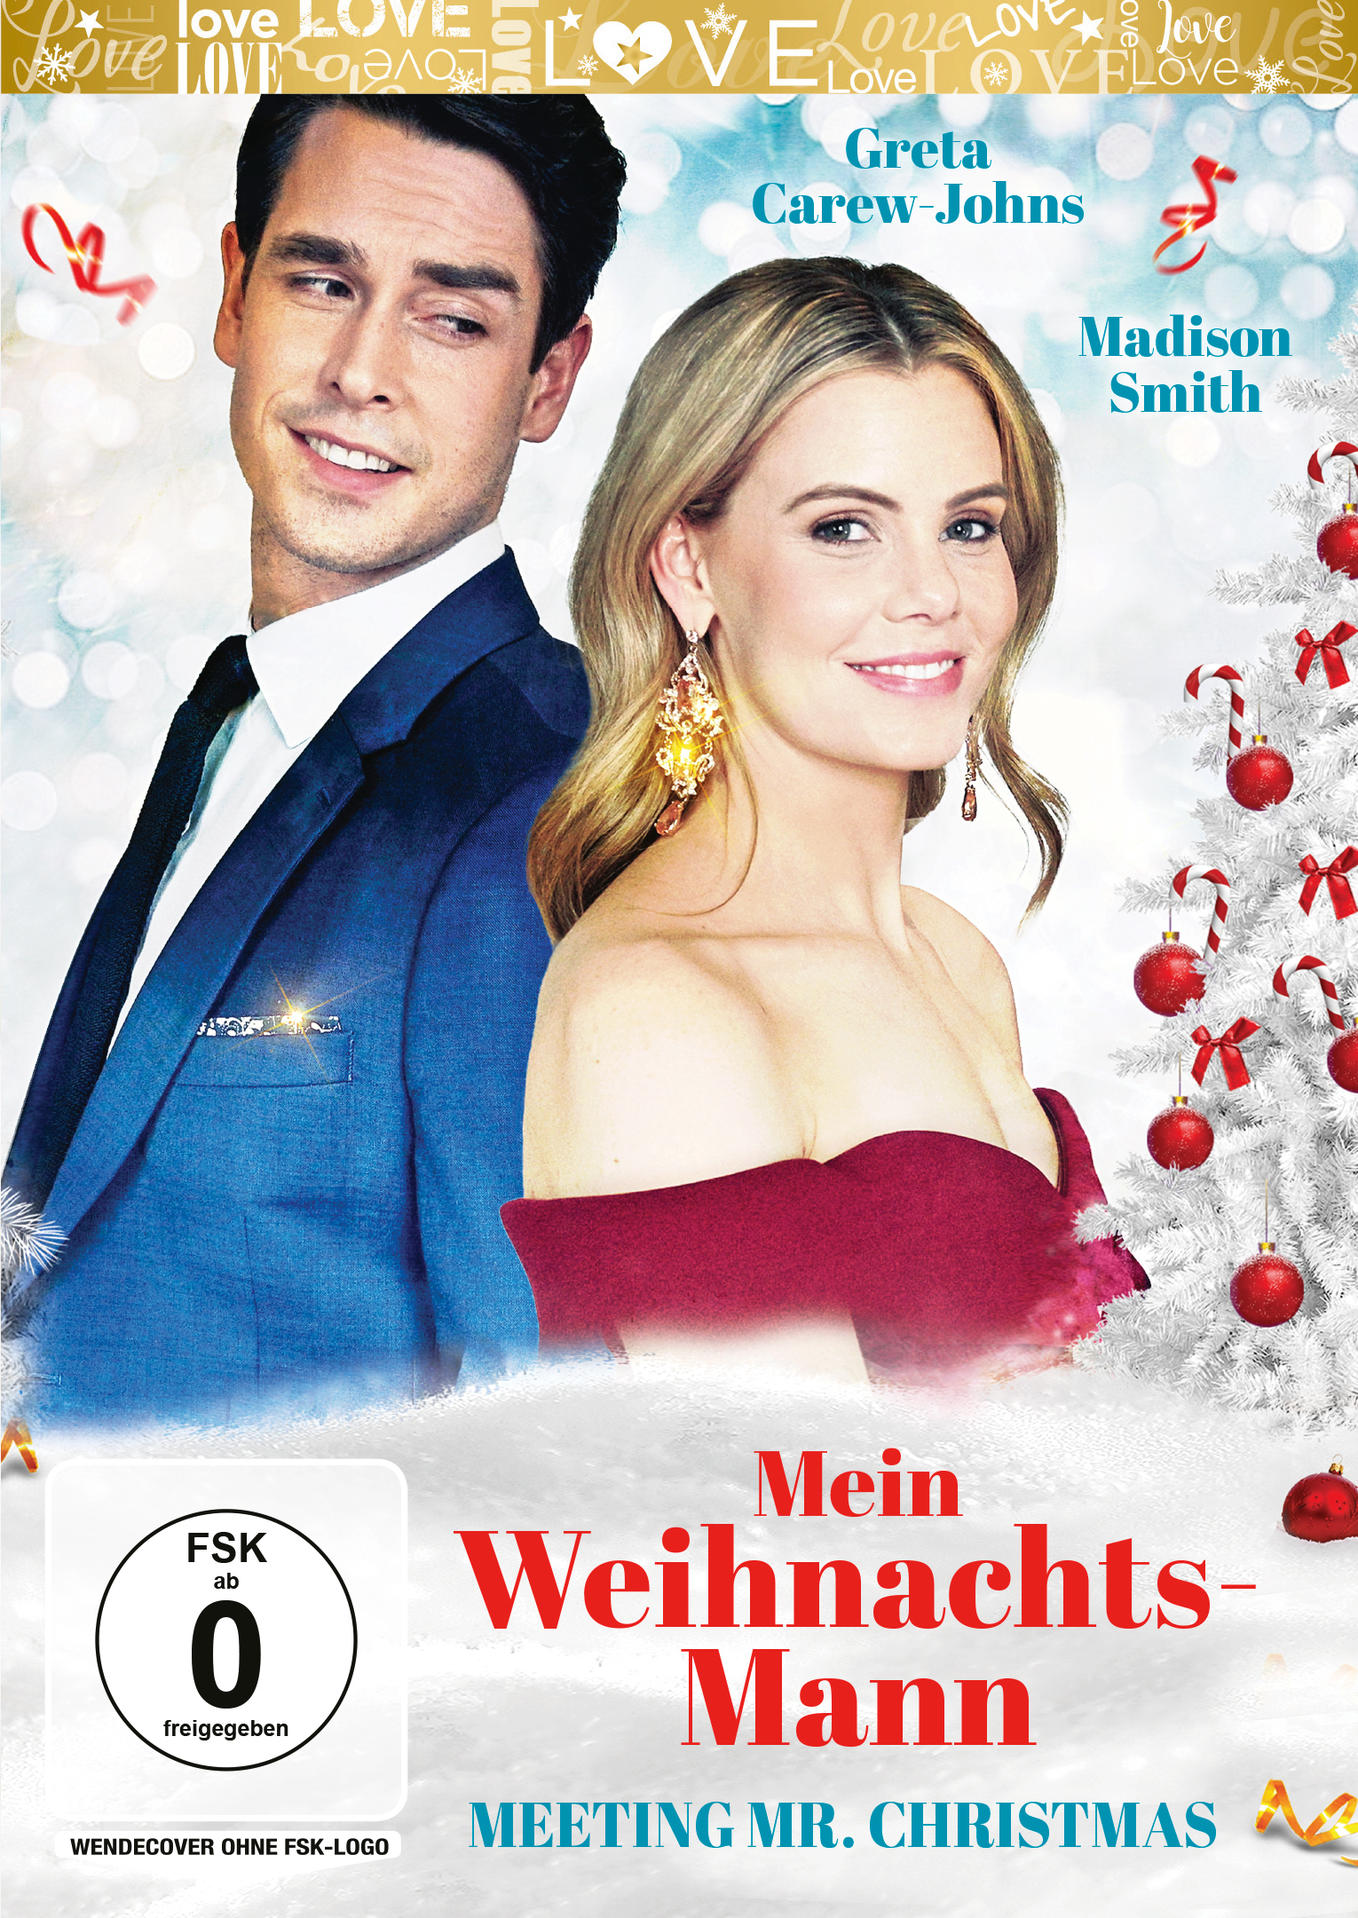 Mr. Weihnachts-Mann DVD Christmas Meeting Mein -